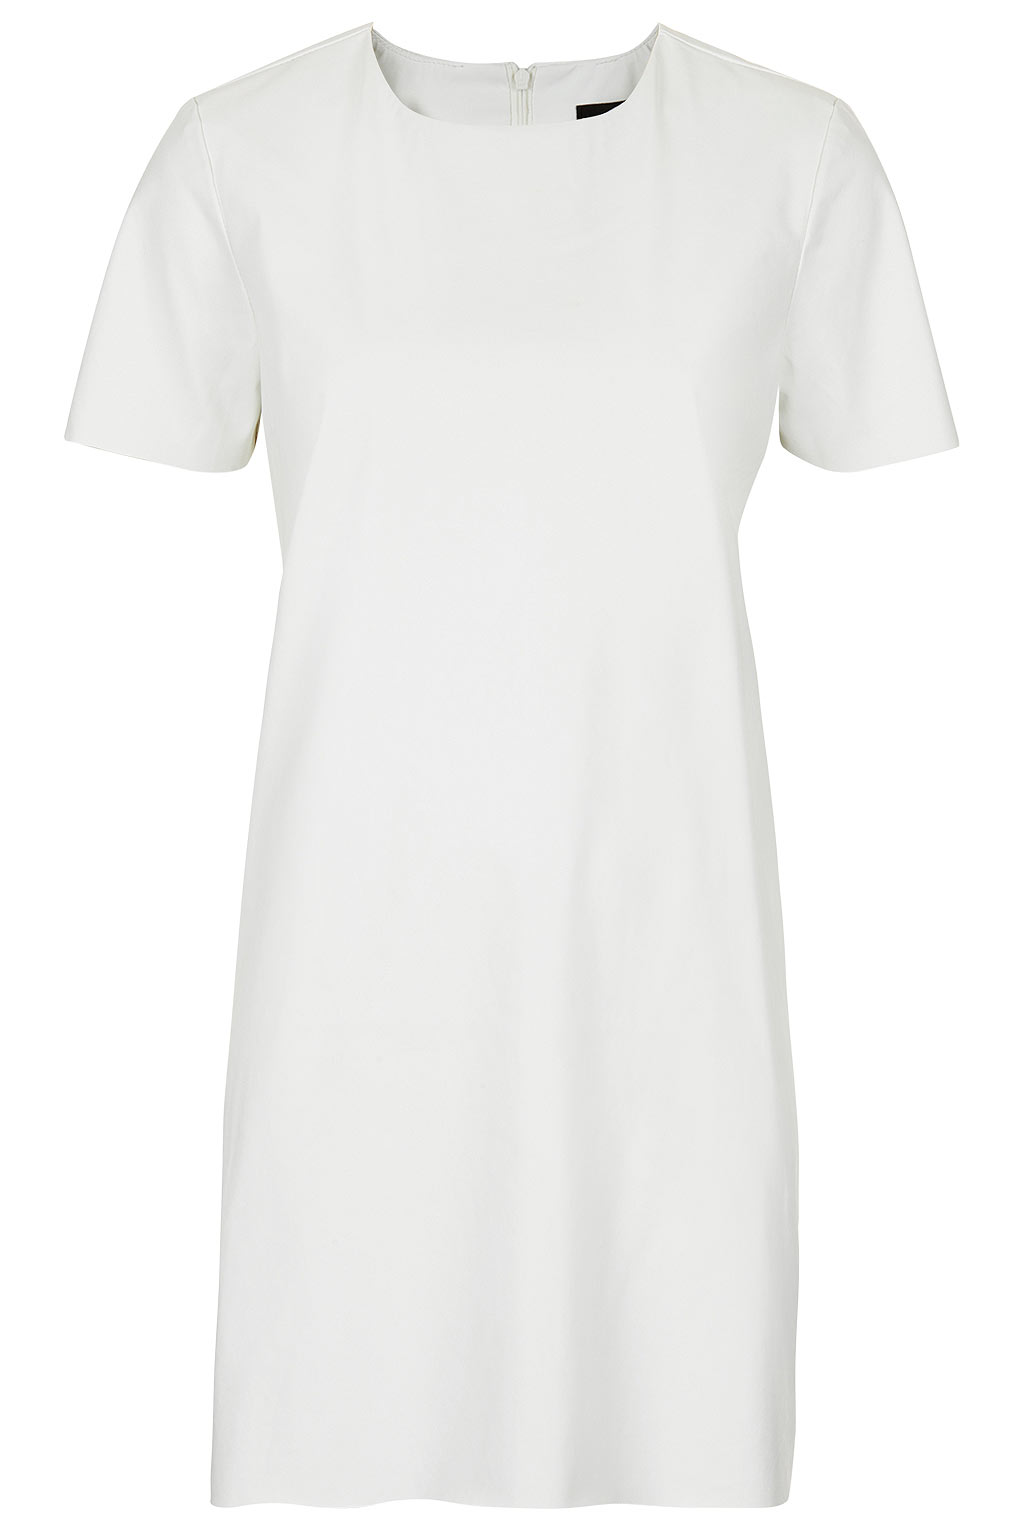 white t shirt dress zara